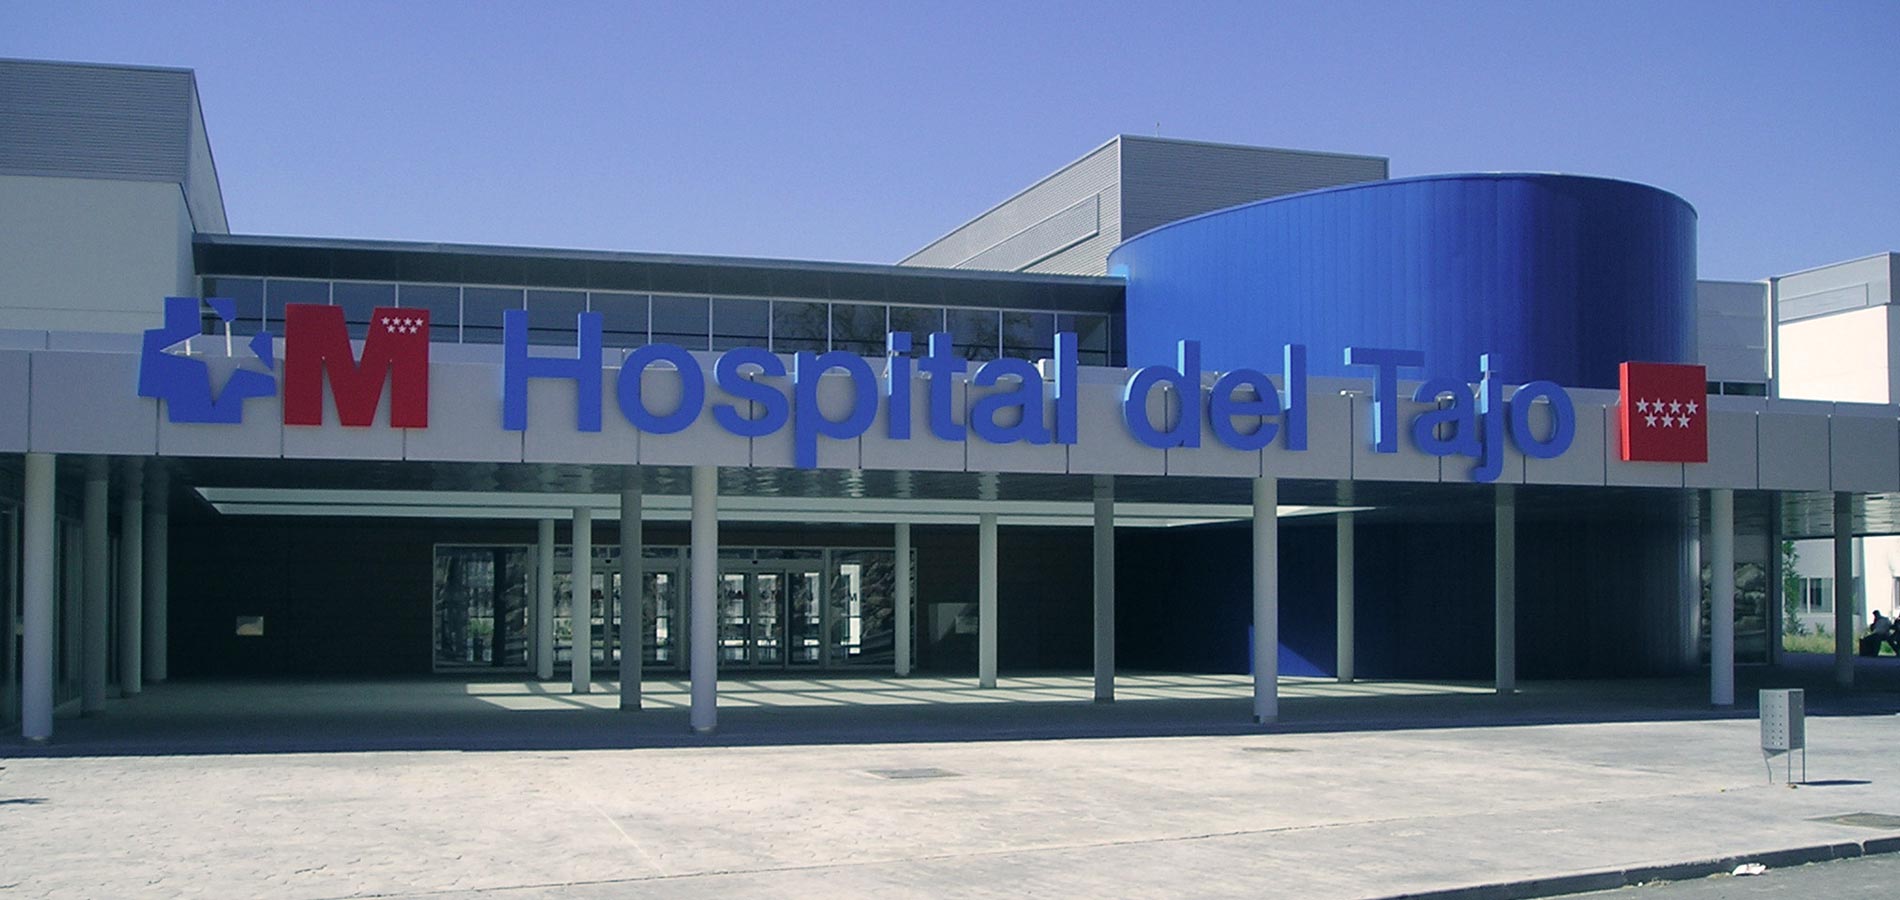 edificación sostenible hospital del tajo aranjuez